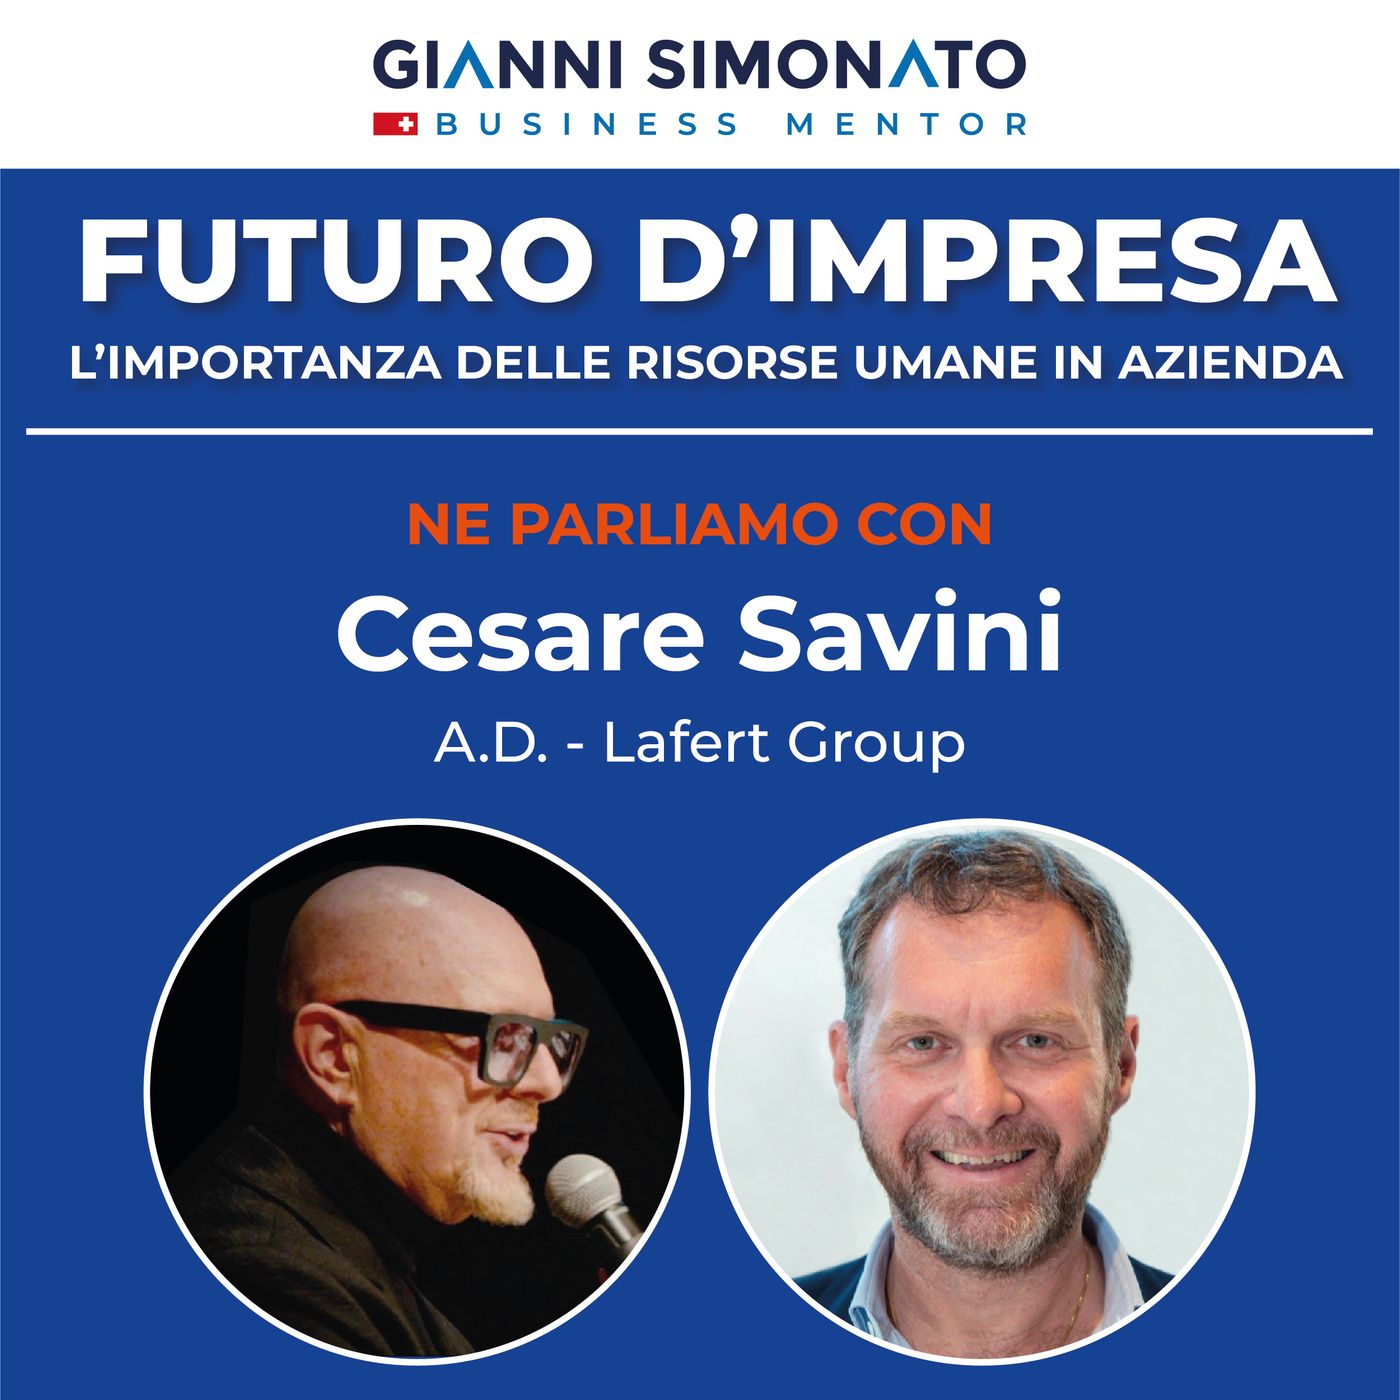 Futuro d'Impresa ne parliamo con: Cesare Savini A.D. - Lafert Group e Gianni Simonato CEO Mentor